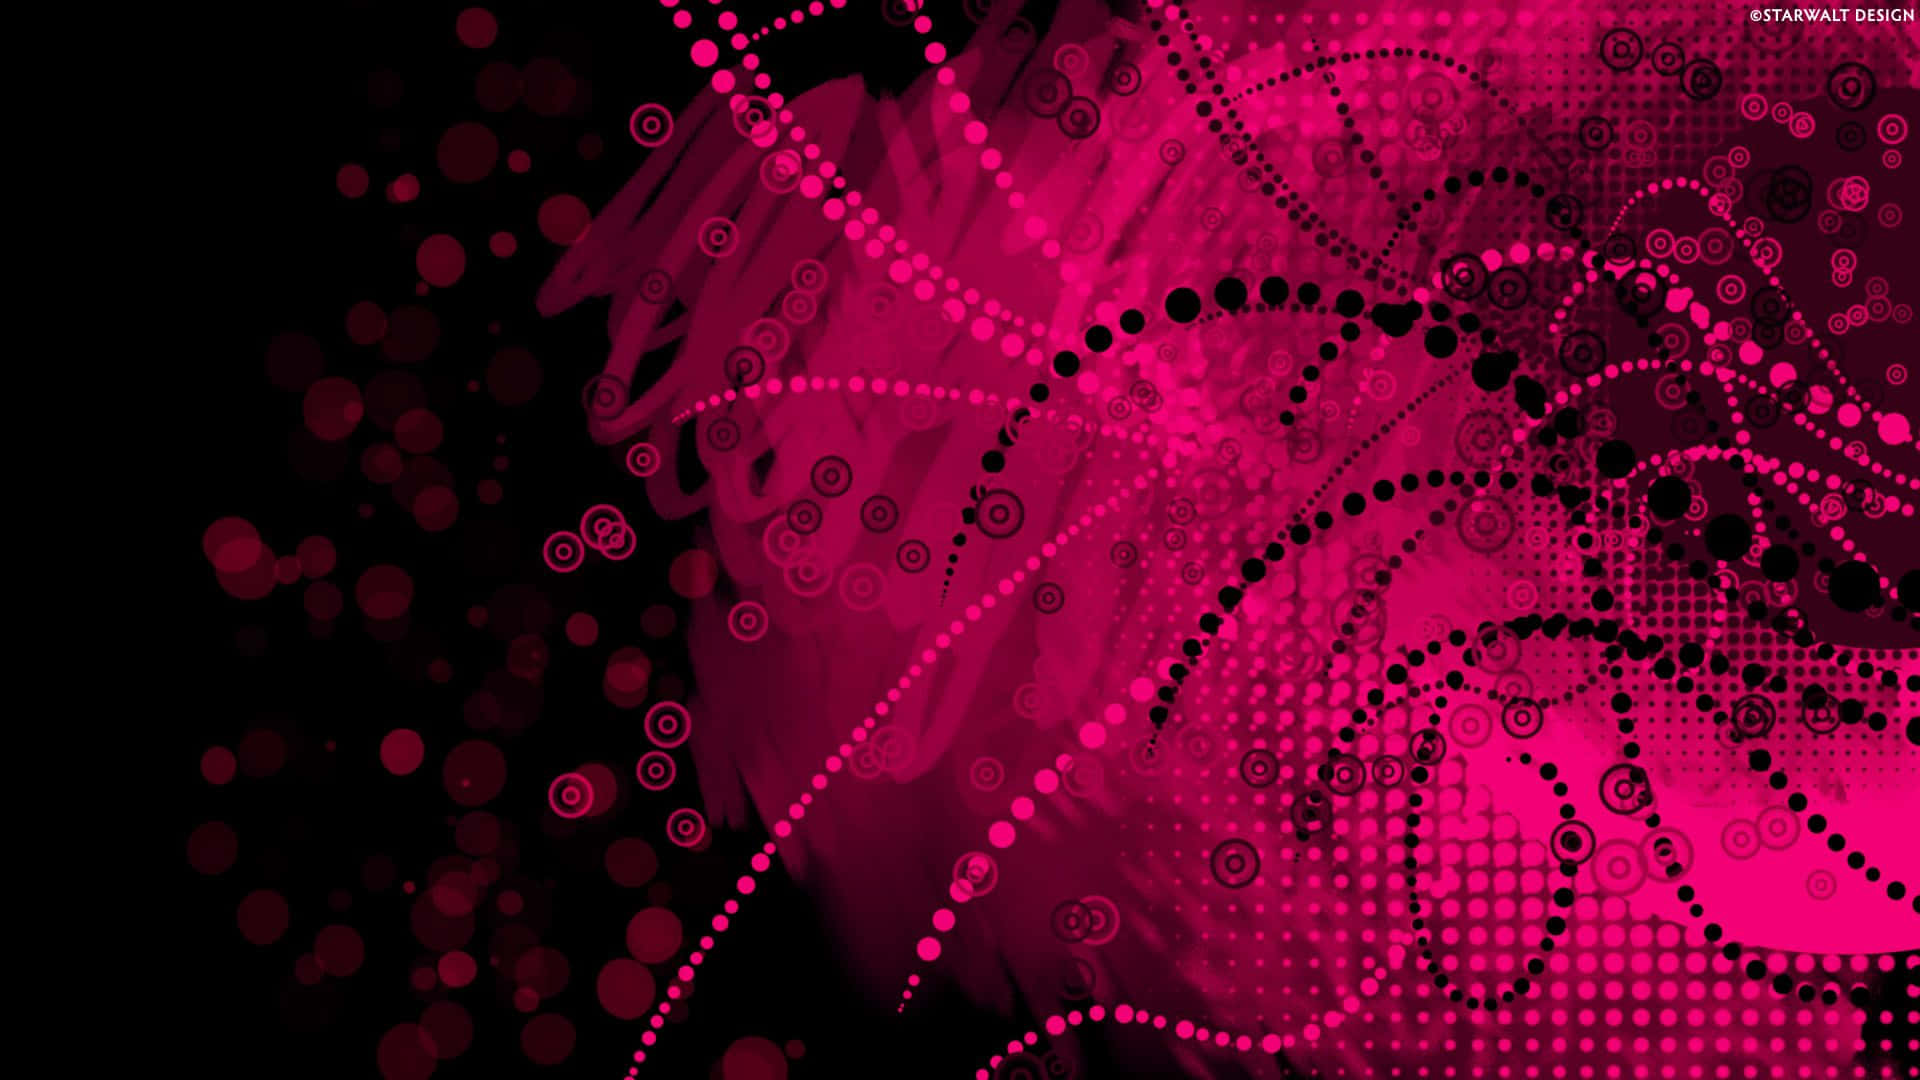 Digital Artwork Of Pink And Black Background